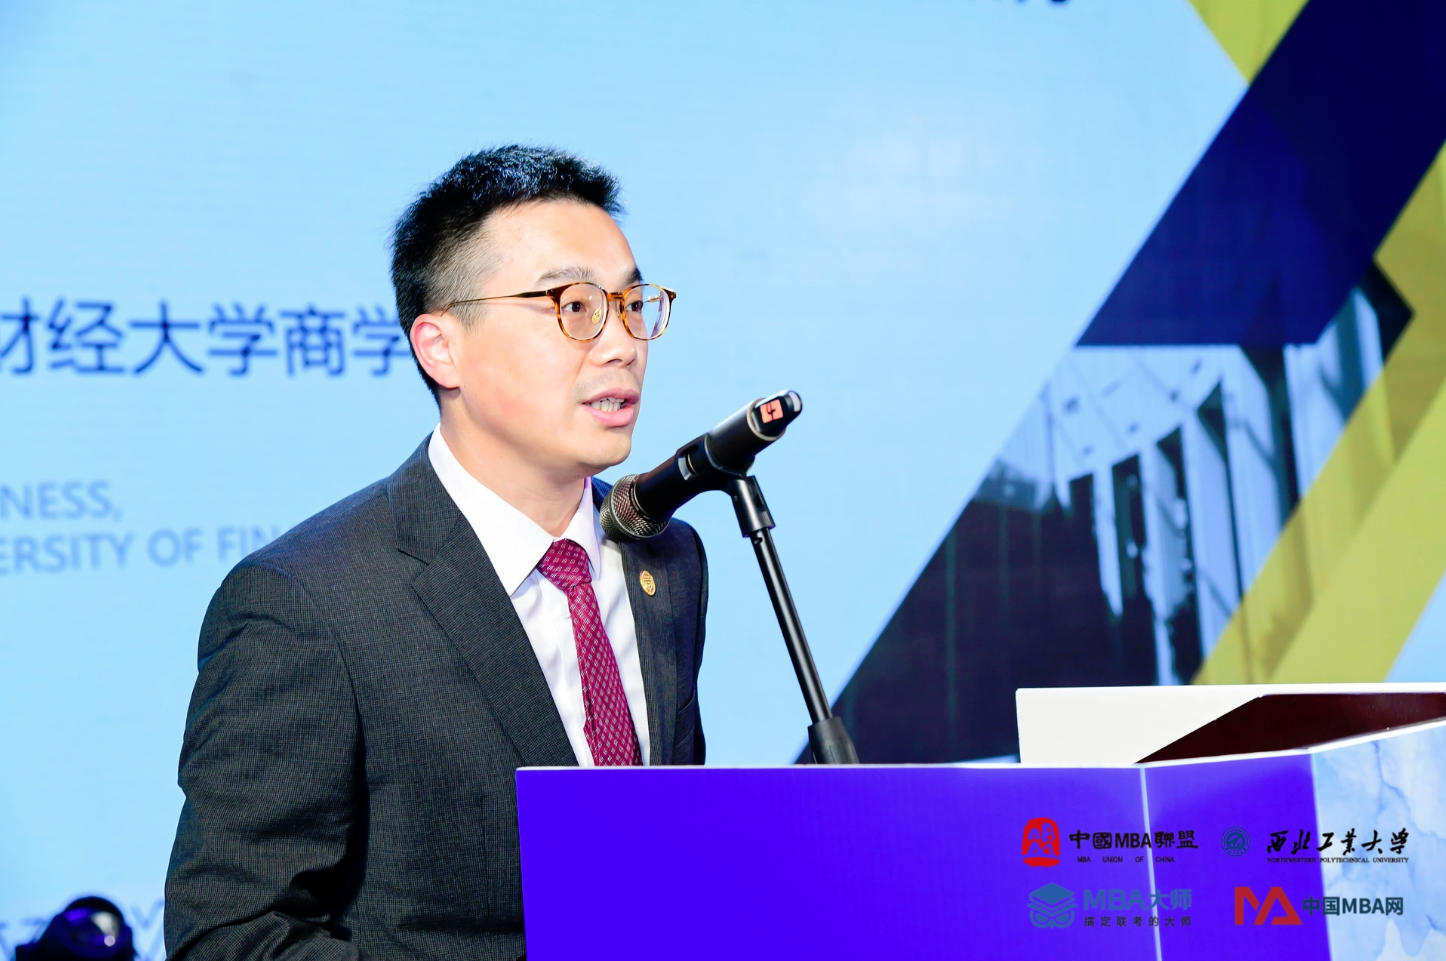 上海财经大学商学院常务副院长魏航一行出席第十四届中国MBA联盟领袖年会暨商学院高峰论坛